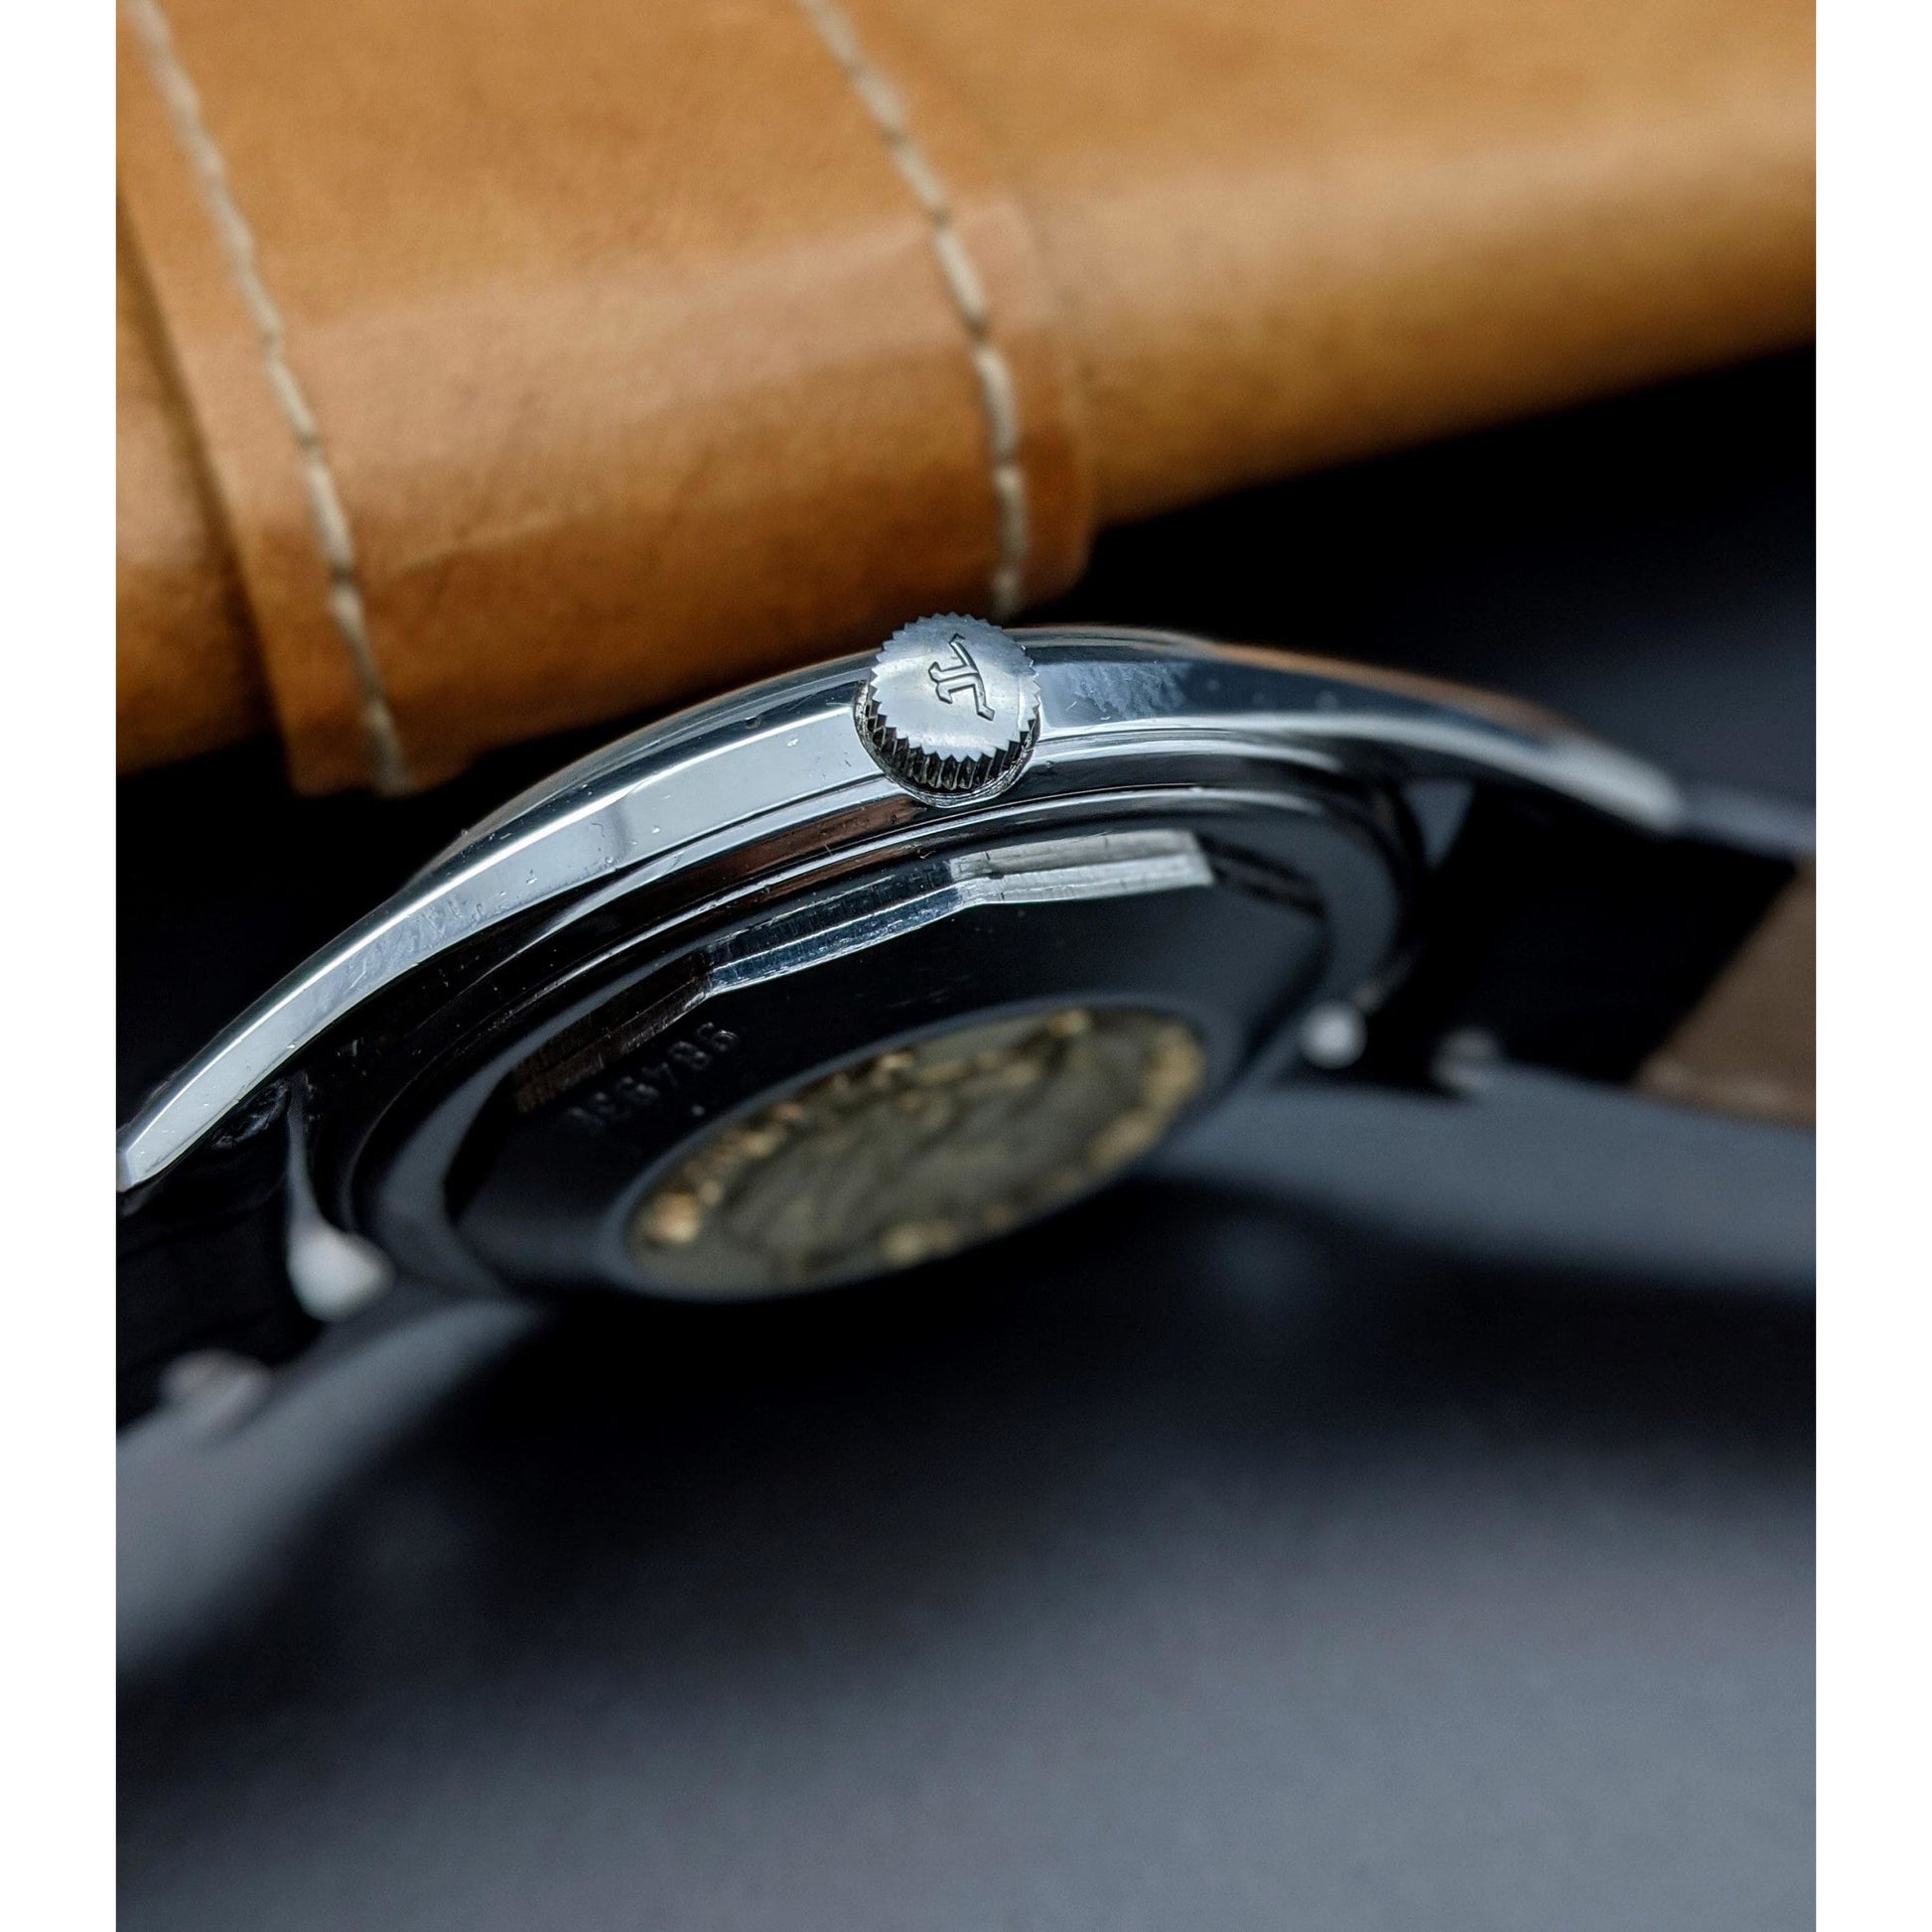 Jaeger-LeCoultre Rare Chronometre Geomatic / Vintage 1960's / Serviced - E-V-W.com